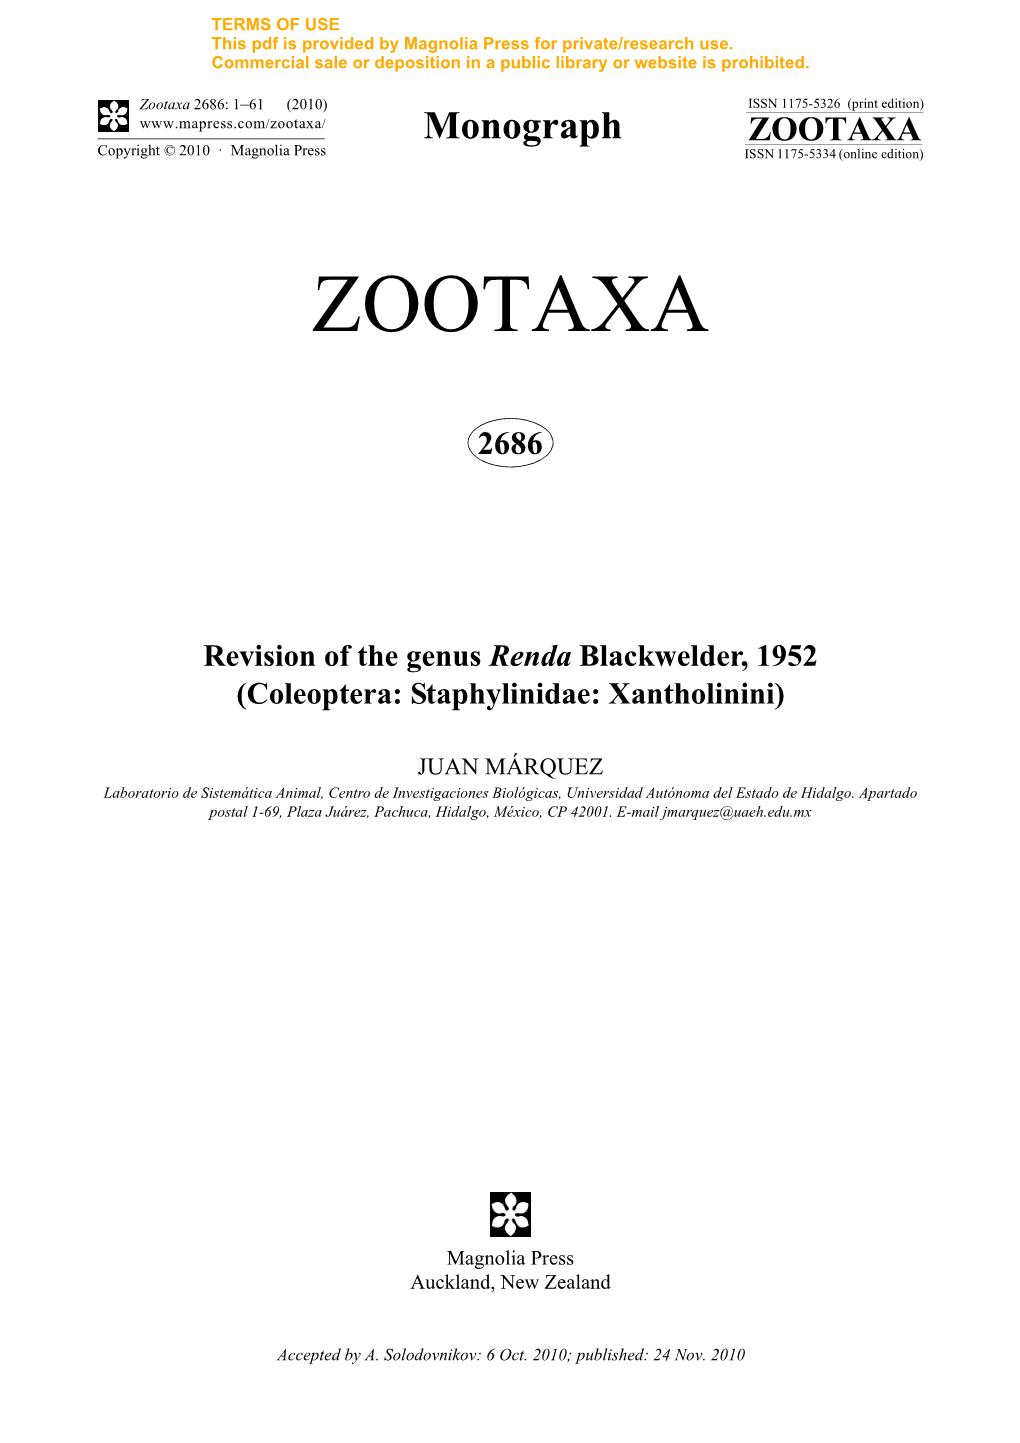 Revision of the Genus Renda Blackwelder, 1952 (Coleoptera: Staphylinidae: Xantholinini)